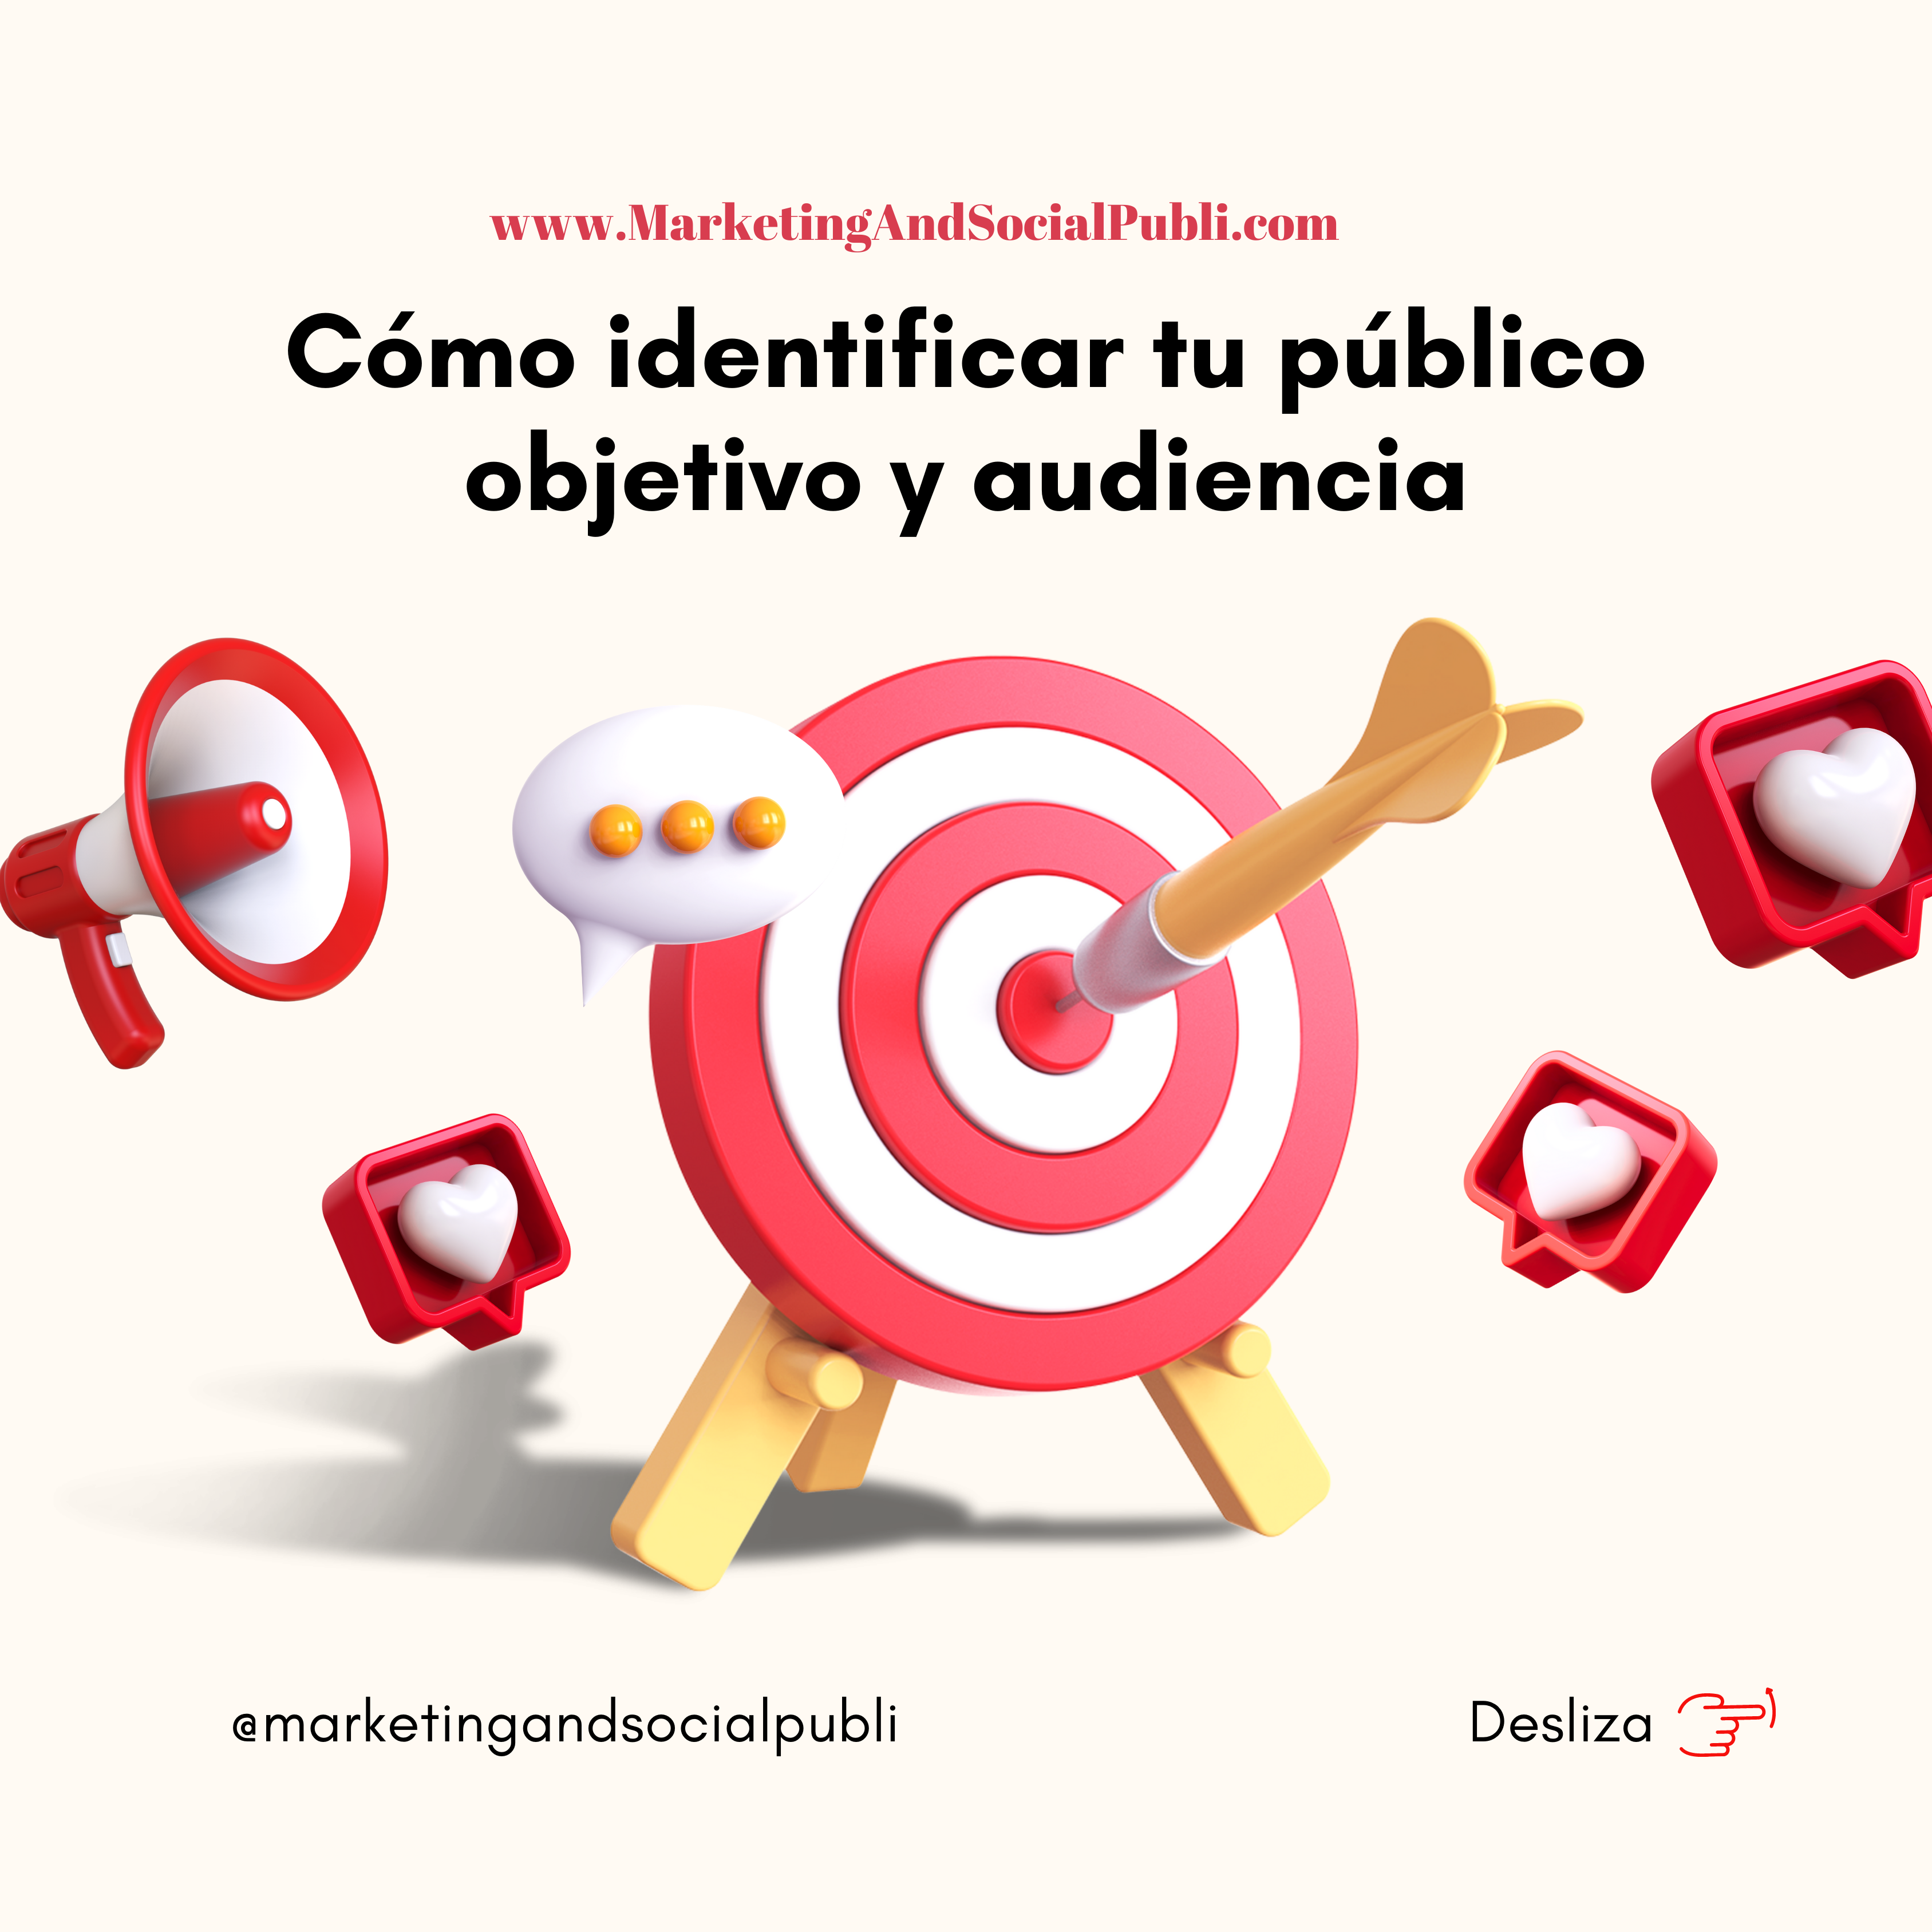 estrategias-identificar-publico-objetivo-marketing-publicidad-redes-sociales